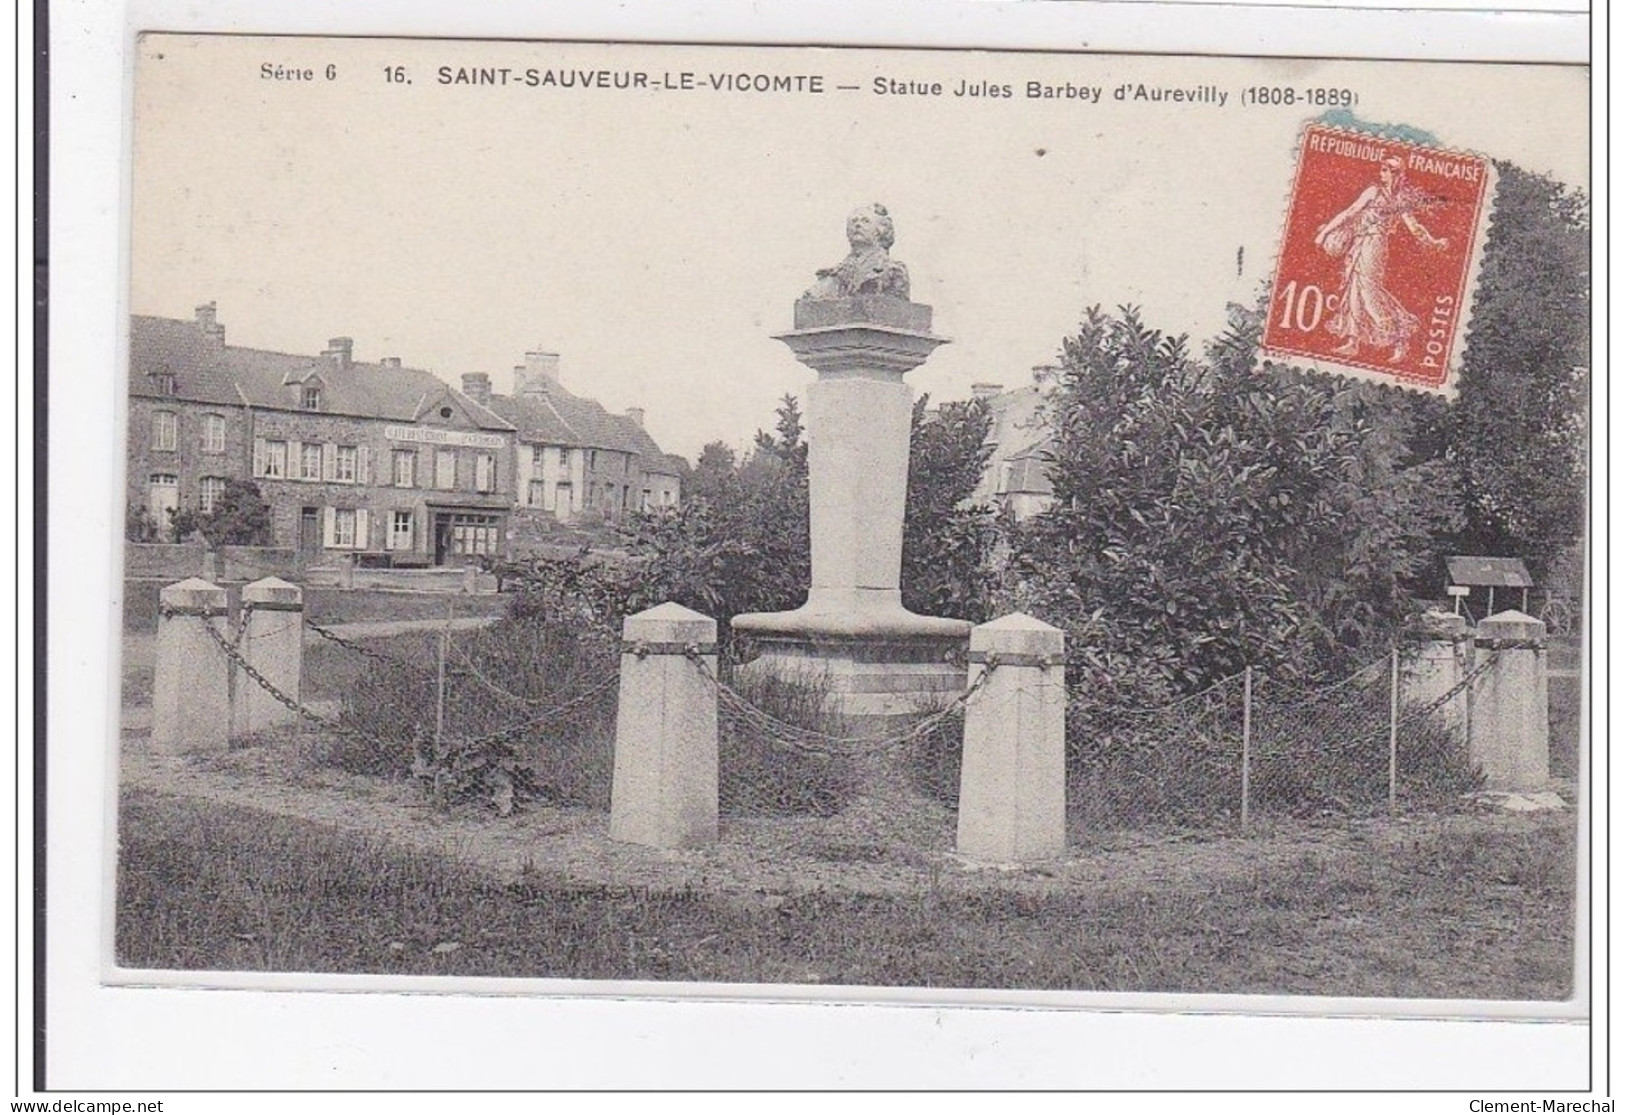 SAINT-SAUVEUR-le-VICOMTE : Statue Jules Barbey D'aurevilly (1908-1889) - Tres Bon Etat - Saint Sauveur Le Vicomte